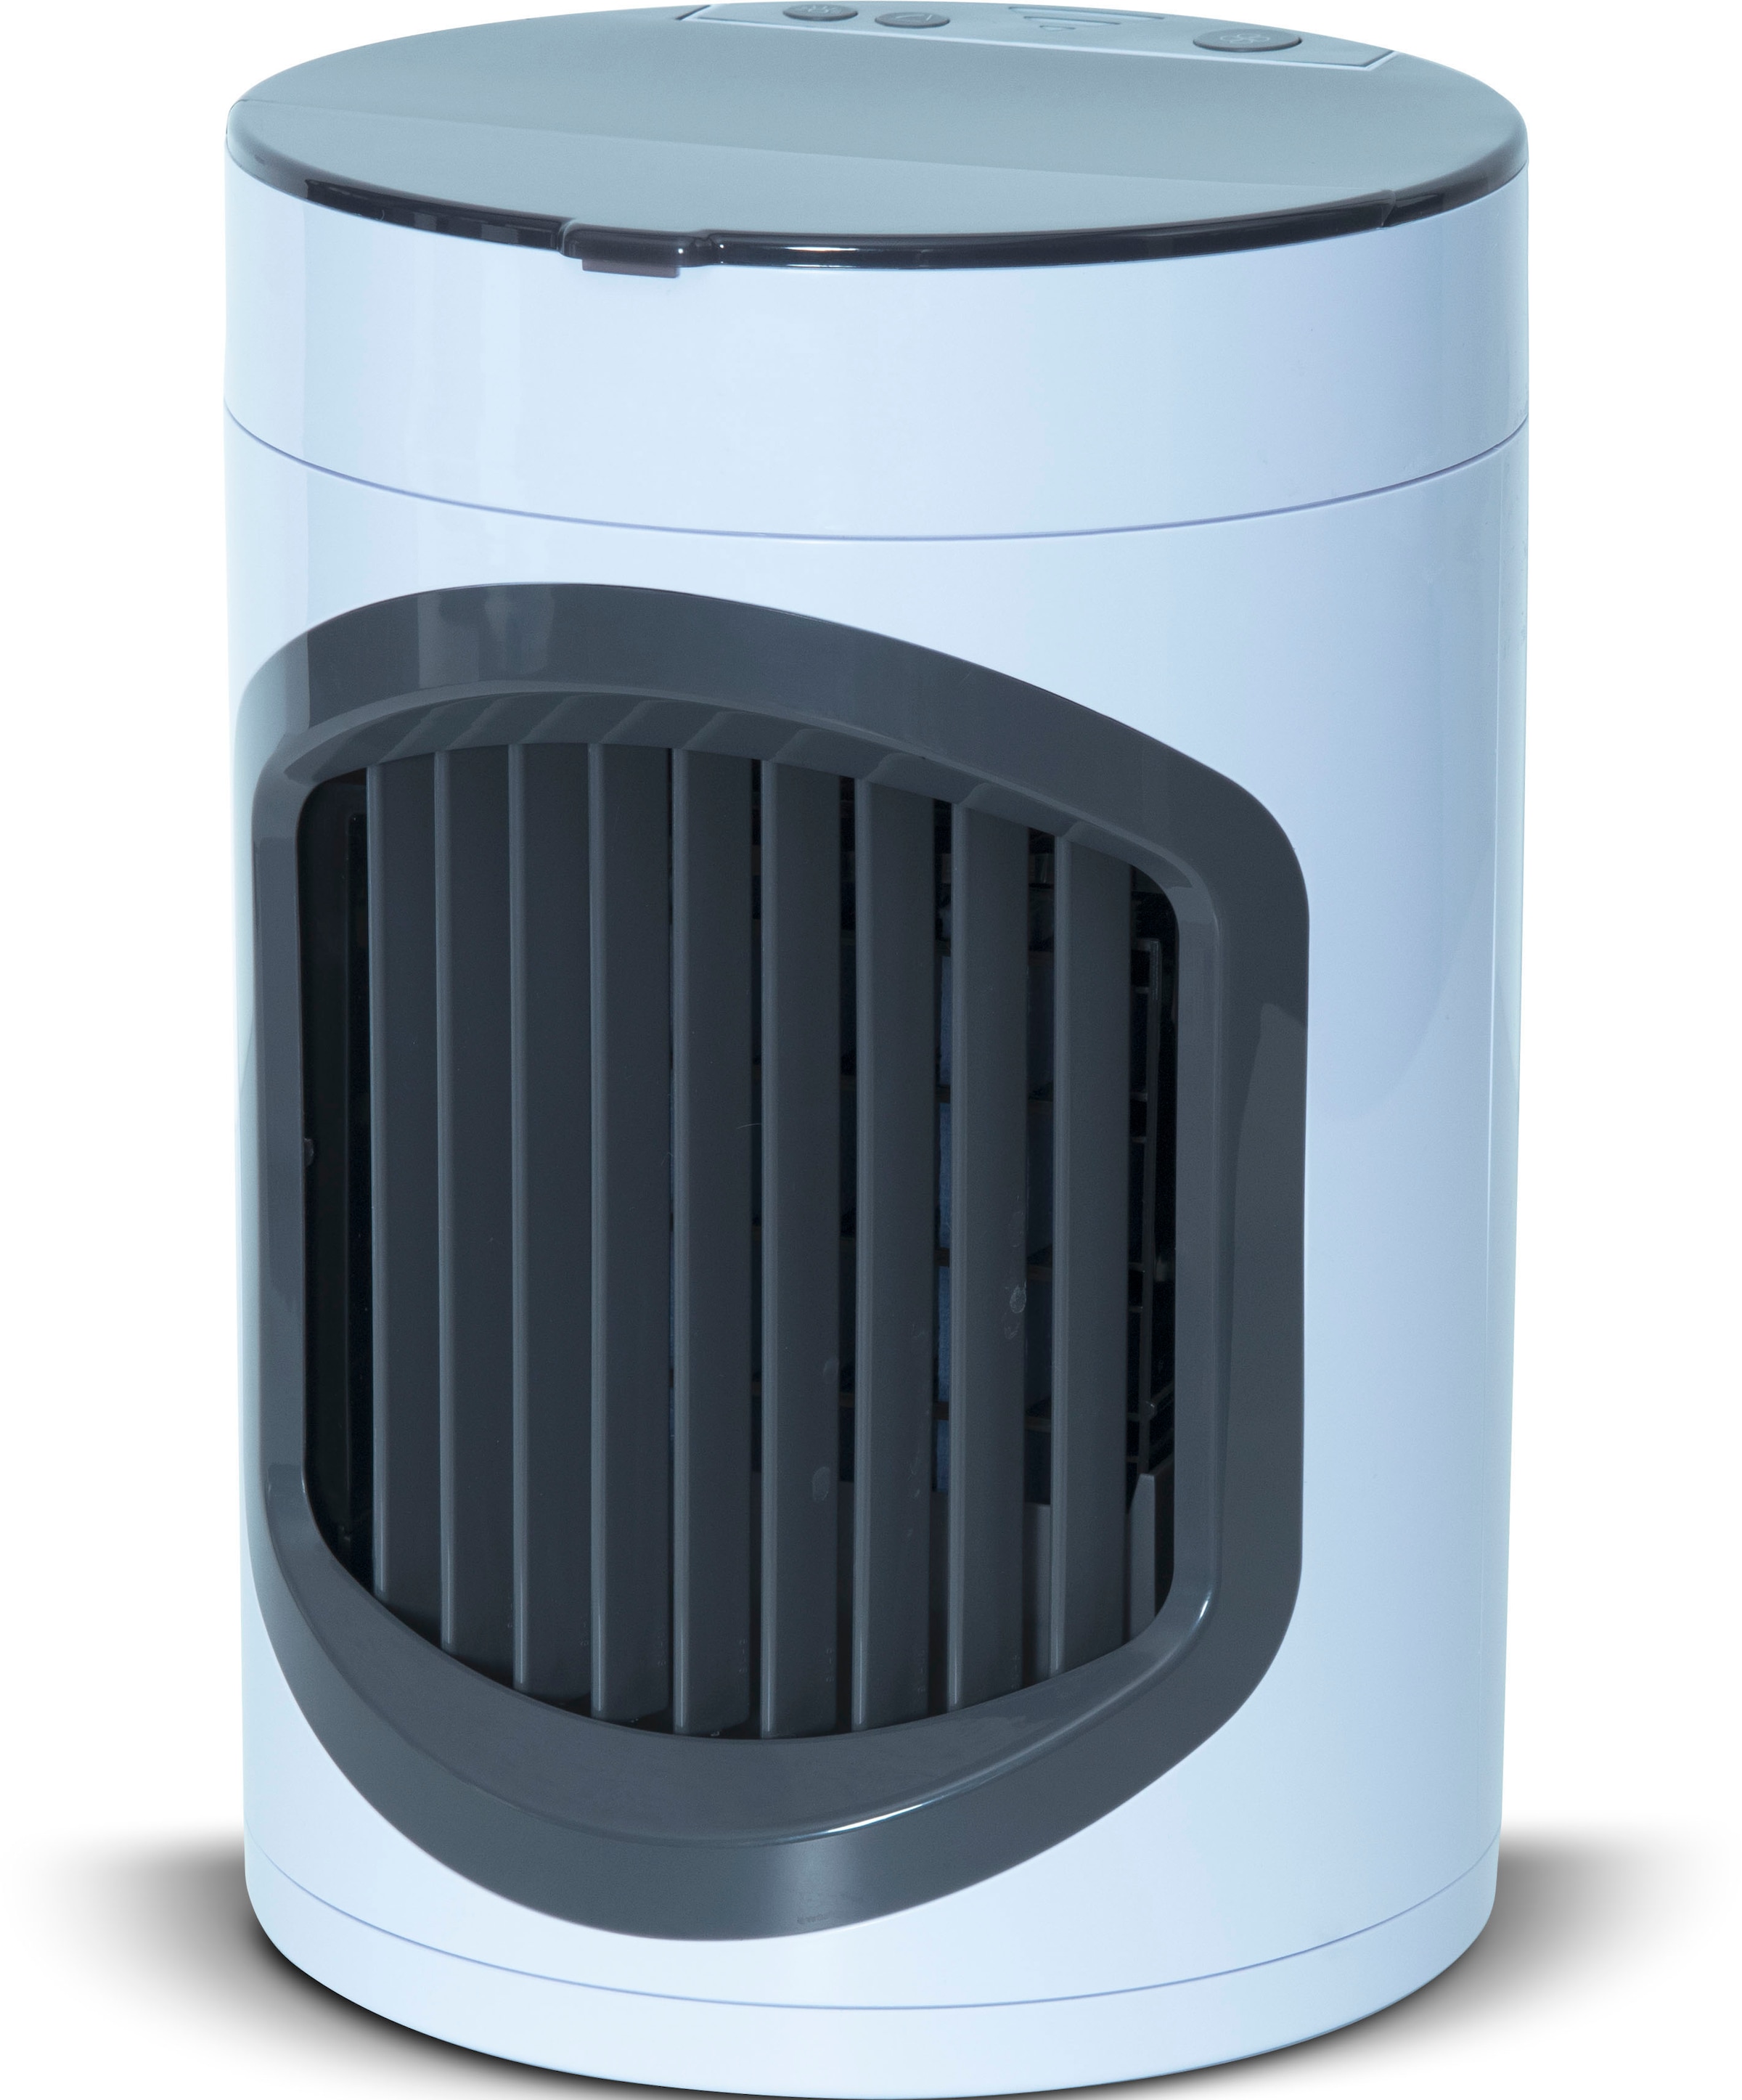 MediaShop Ventilatorkombigerät »Smart Chill«, Luftkühler bei